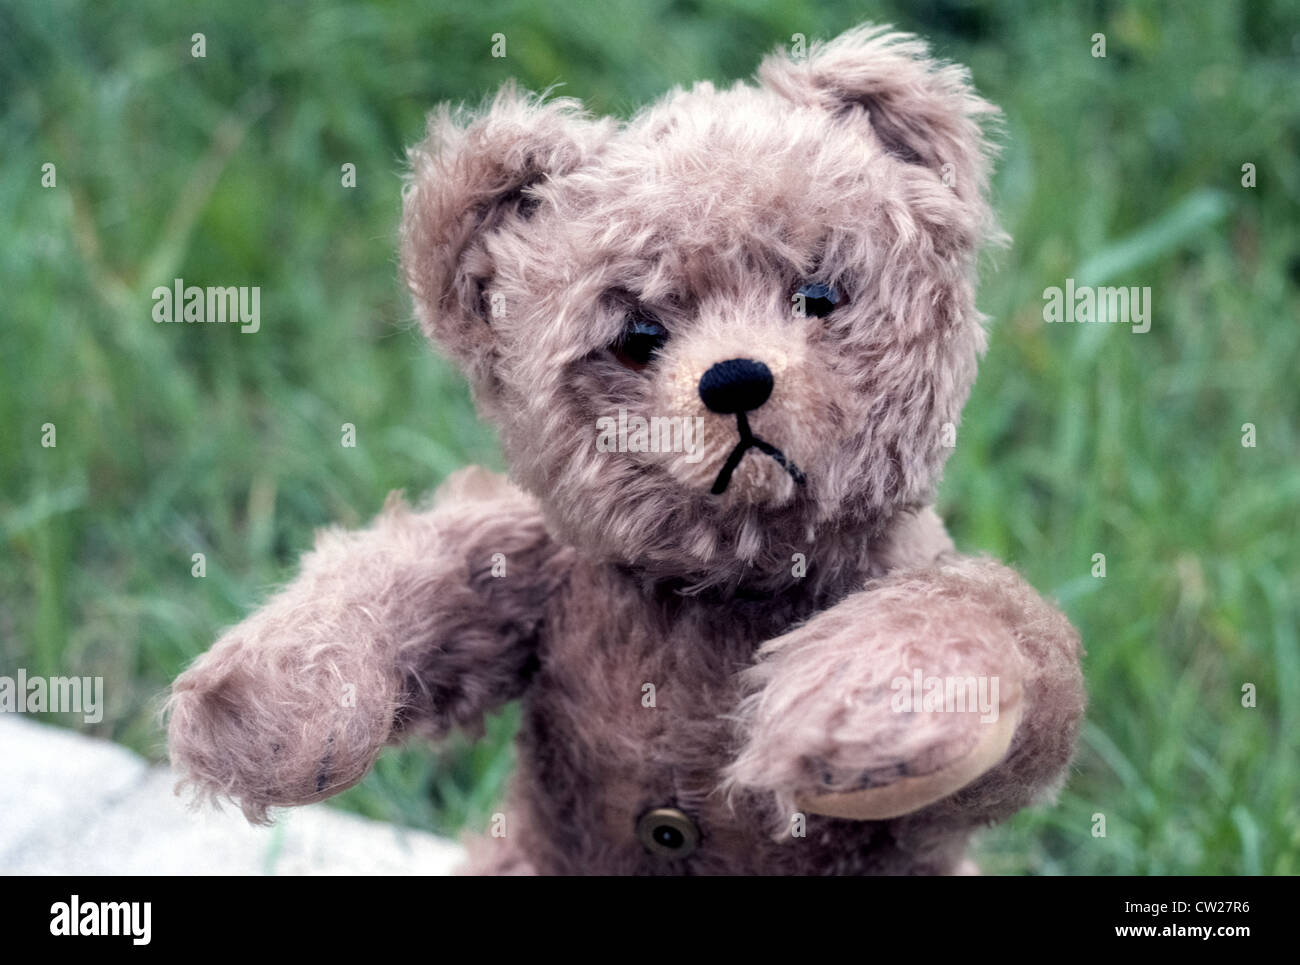 This sad mohair Teddy Bear is hoping for a hug. Stock Photo